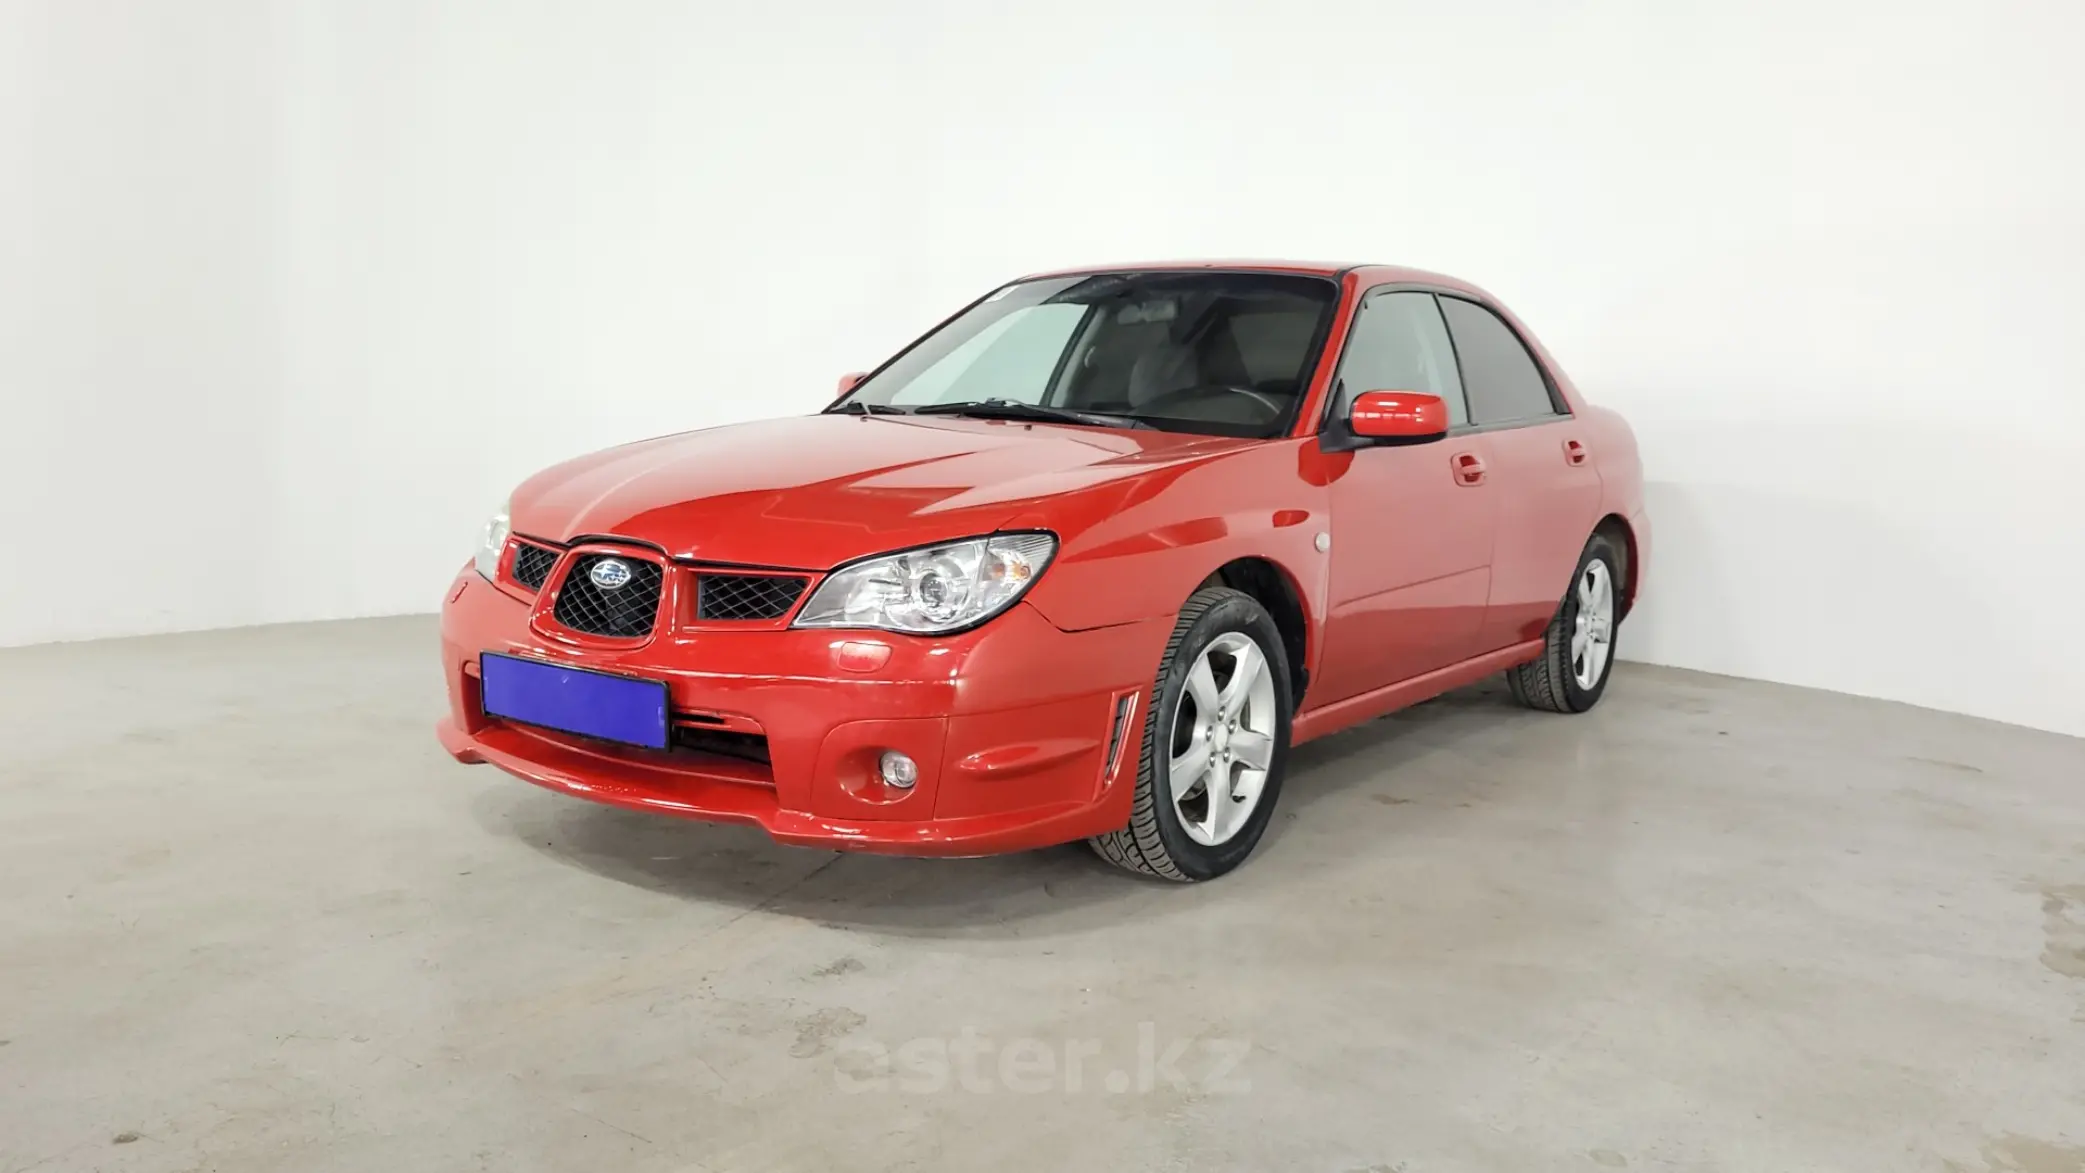 Subaru Impreza 2006. Субару Импреза 2006 красная белый фон. Субару Импреза в 2006 году прайс. Красная Импреза 2 на черных дисках. Субару импреза 2006 года